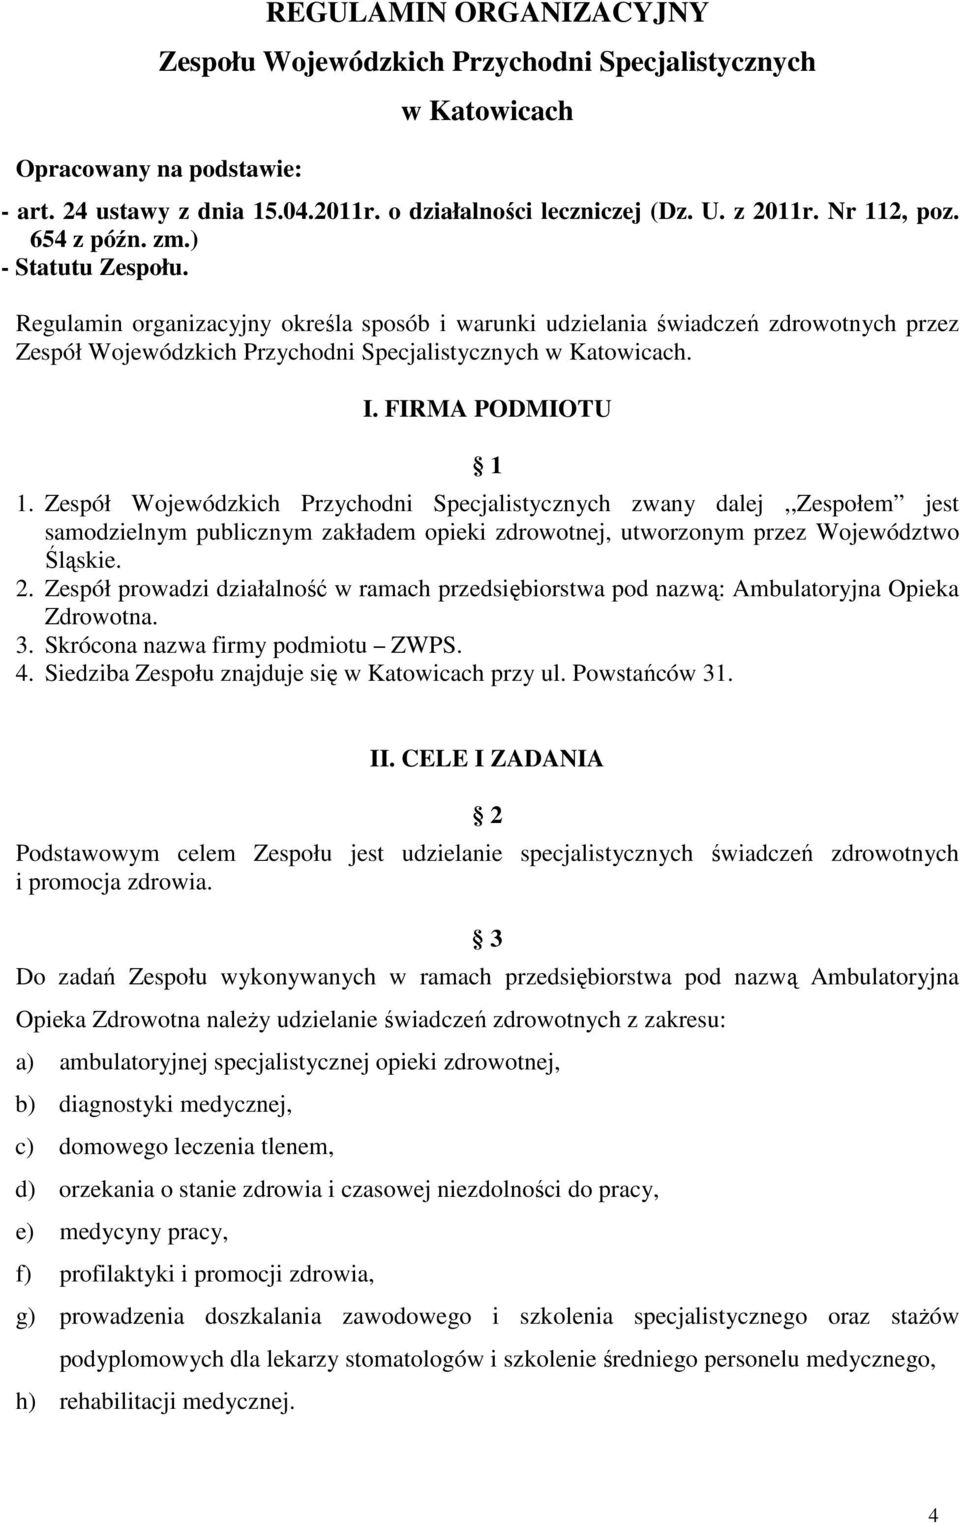 Regulamin organizacyjny określa sposób i warunki udzielania świadczeń zdrowotnych przez Zespół Wojewódzkich Przychodni Specjalistycznych w Katowicach. I. FIRMA PODMIOTU 1 1.